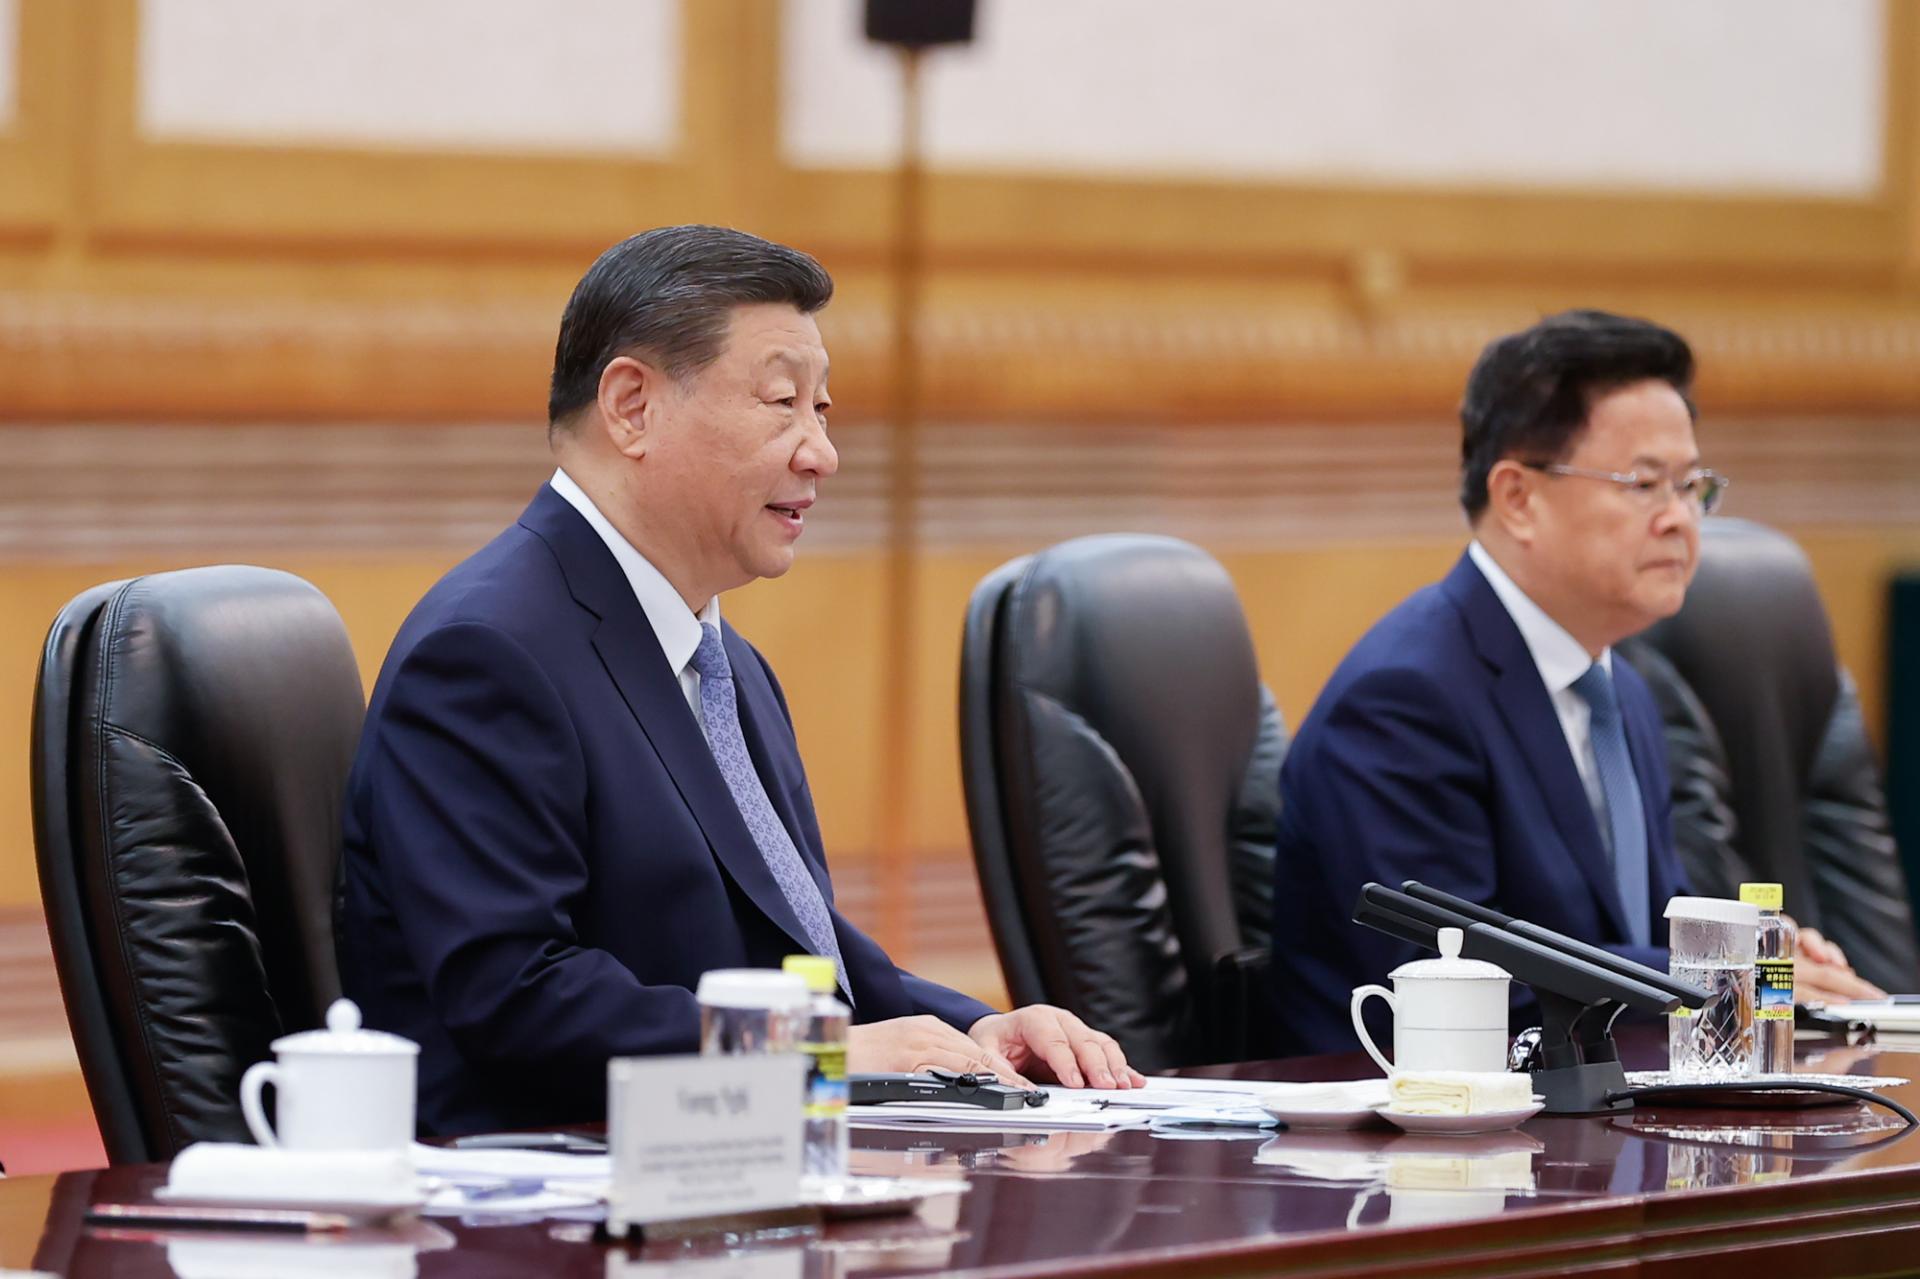 Tổng Bí thư, Chủ tịch Tập Cận Bình khẳng định Trung Quốc coi trọng cao độ và luôn coi quan hệ với Việt Nam là hướng ưu tiên trong tổng thể chính sách ngoại giao láng giềng.